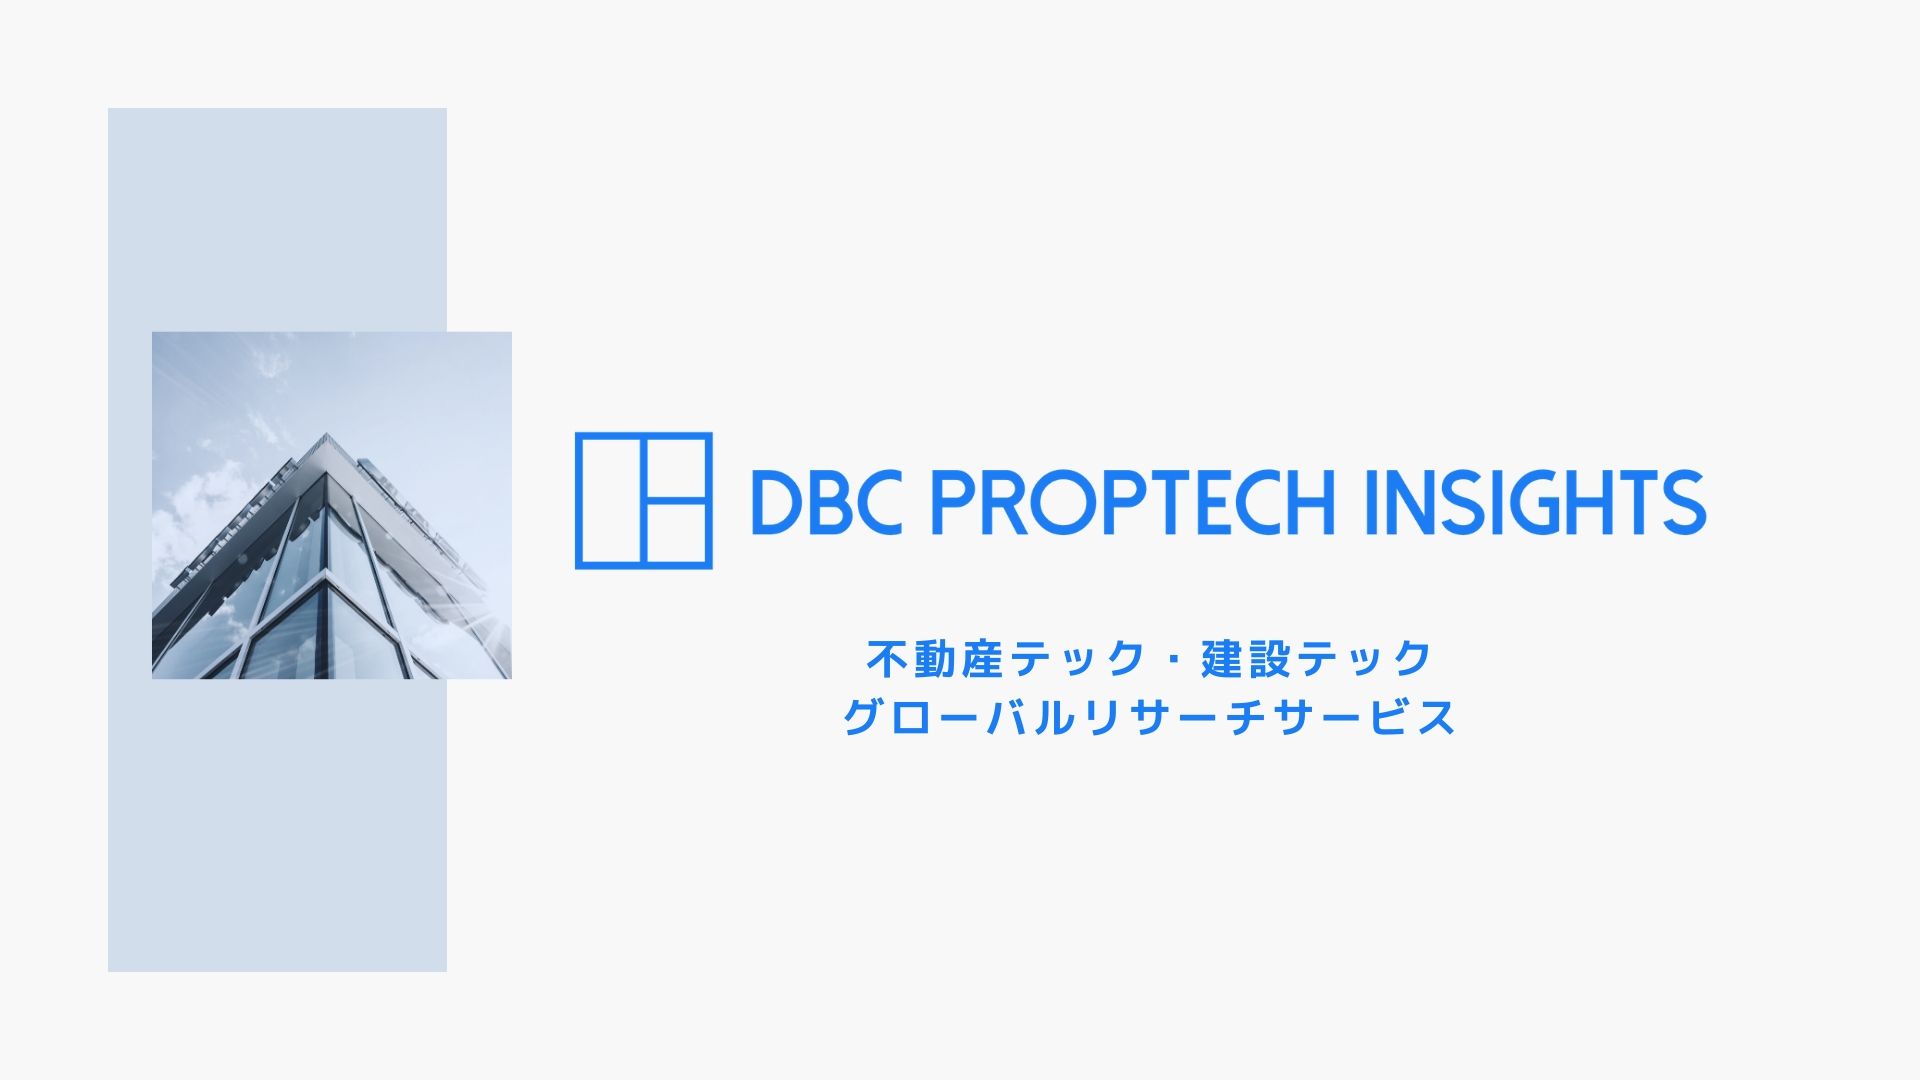 新規事業企画担当向けproptechリサーチサービス Dbc Proptech Insights の提供を開始 株式会社デジタルベースキャピタルのプレスリリース